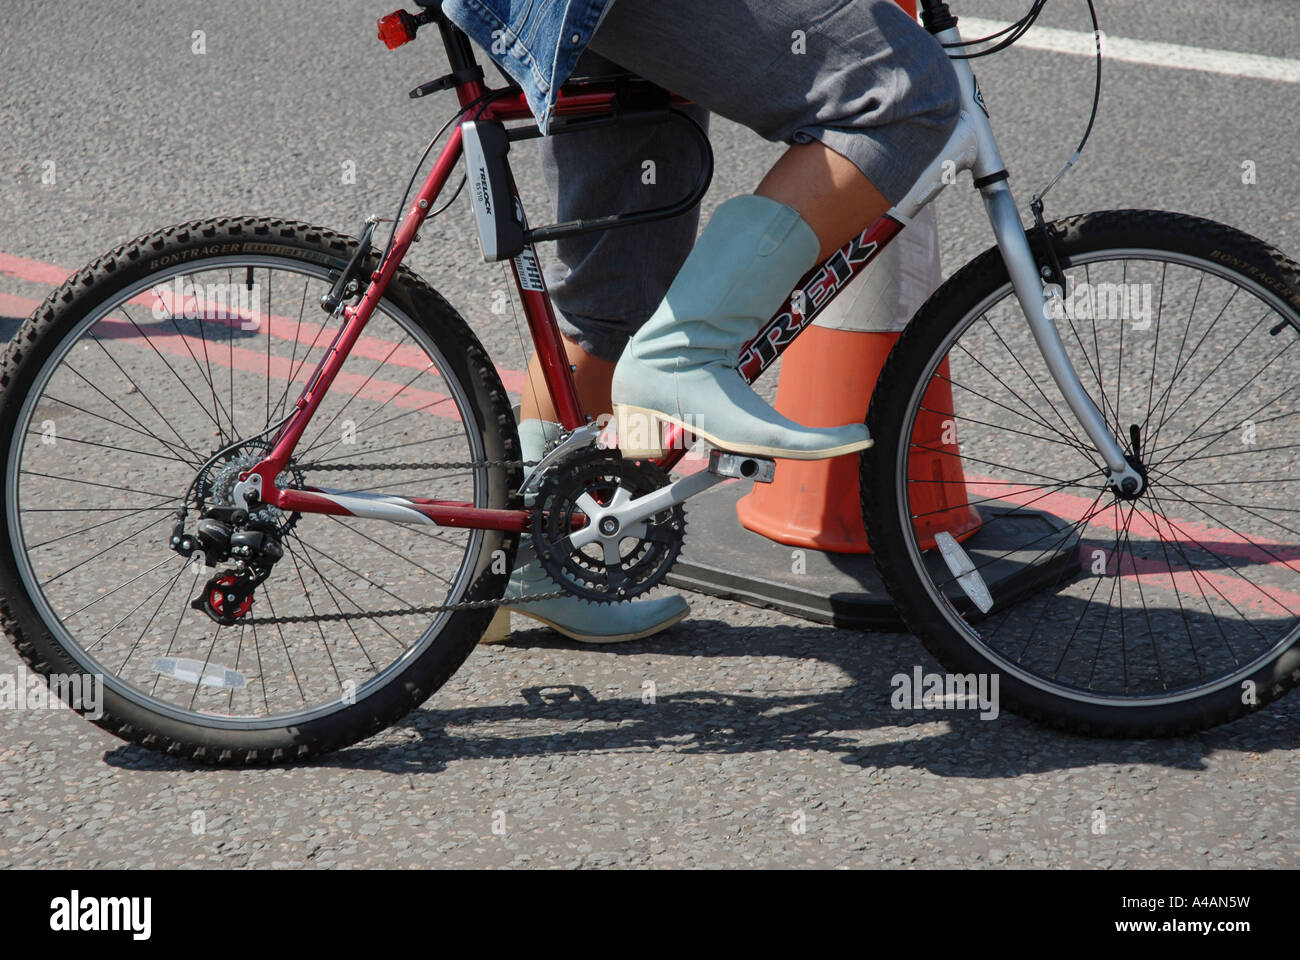 Une femme monte un vélo en bottes de cow-boy Photo Stock - Alamy